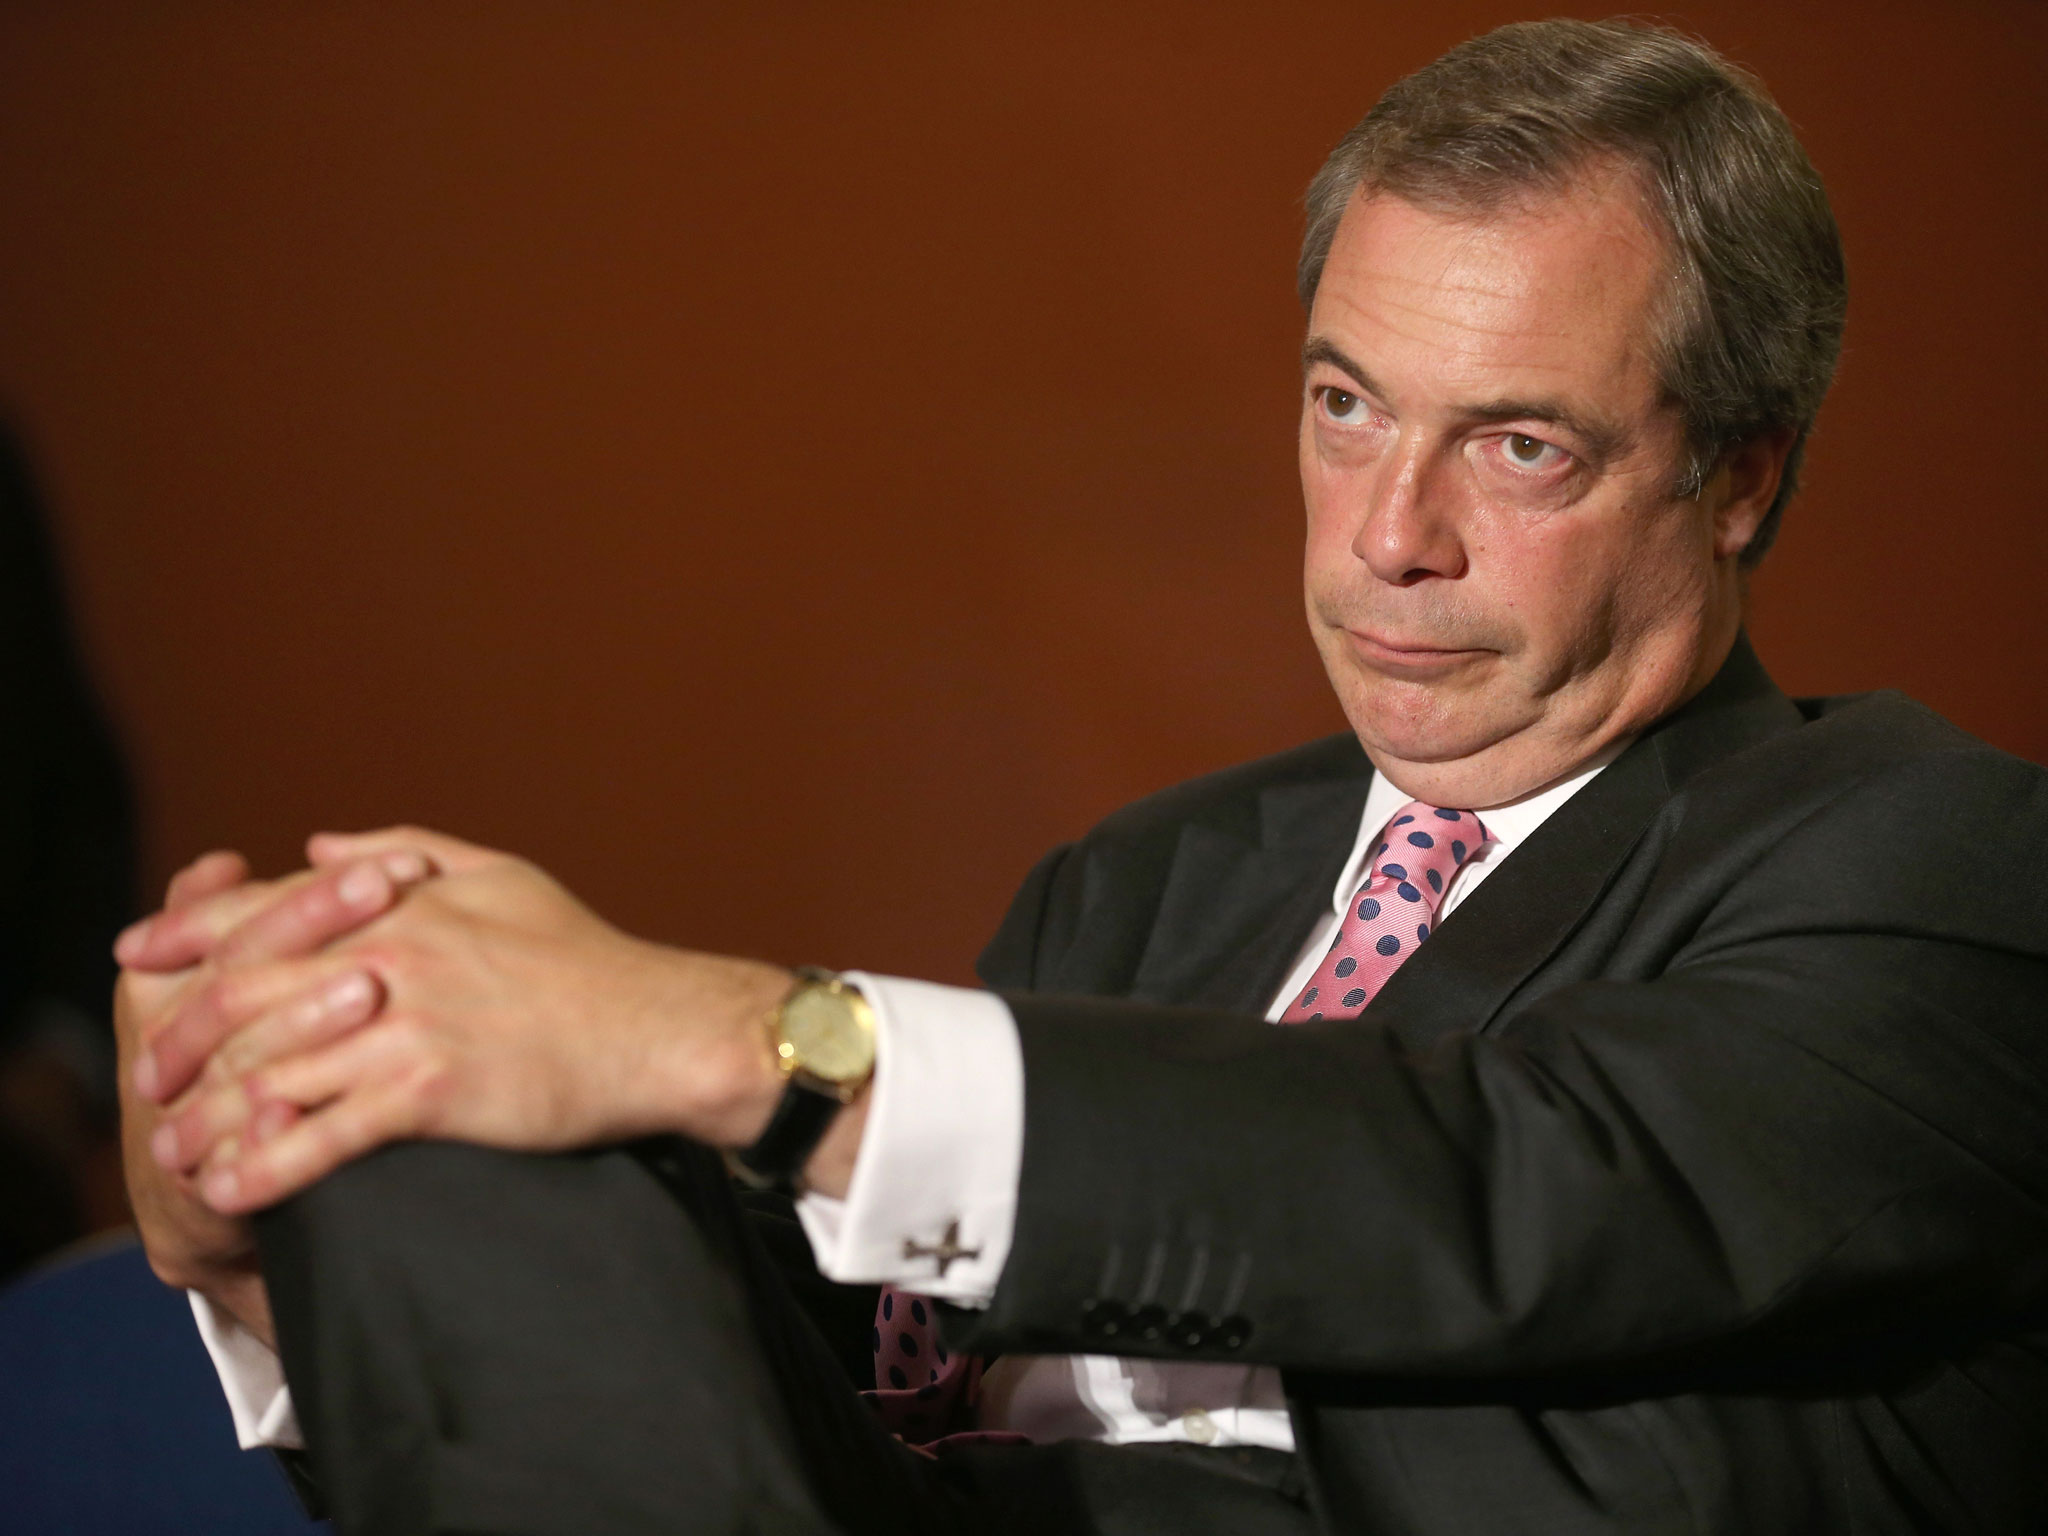 Nigel Paul Farage. Γεννημένος στις 3 Απριλίου 1964, ο Φάρατζ εγκατέλειψε το 1992 το Συντηρητικό Κόμμα, λόγω του ότι διαφώνησε με την απόφαση του να ψηφίσει τη Συνθήκη του Μάαστριχτ. Υπήρξε ιδρυτικό μέλος του UKIP. Το 1999 εκλεχθηκε Ευρωβουλευτής και διετέλεσε πρόεδρος του κόμματος την περίοδο 2006-2009. Το 2010 επανήλθε στην ηγεσία, για να οδηγήσει το UKIP στη νίκη στις Ευρωεκλογές του 2014. Ήταν η πρώτη φορά που κόμμα εκτός από τους Συντηρητικούς και τους Εργατικούς κέρδιζε τις εκλογές σε εθνικό επίπεδο από τις εκλογές του 1906.